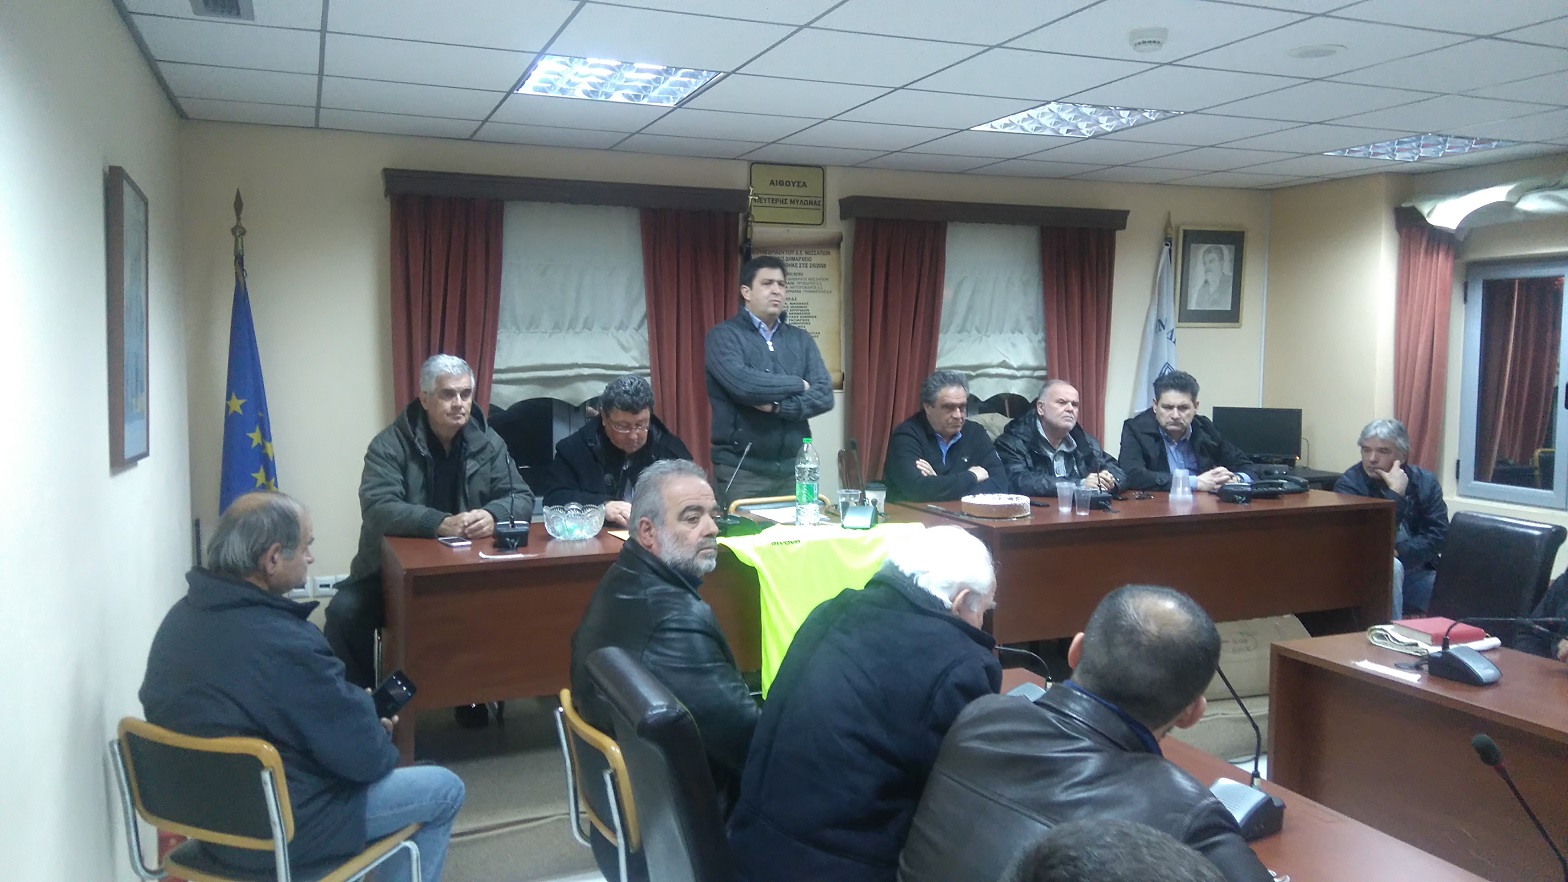 Εκδήλωση κοπής πίτας  σωματείων Δήμου Διρφύων Μεσσαπίων DSC 1222